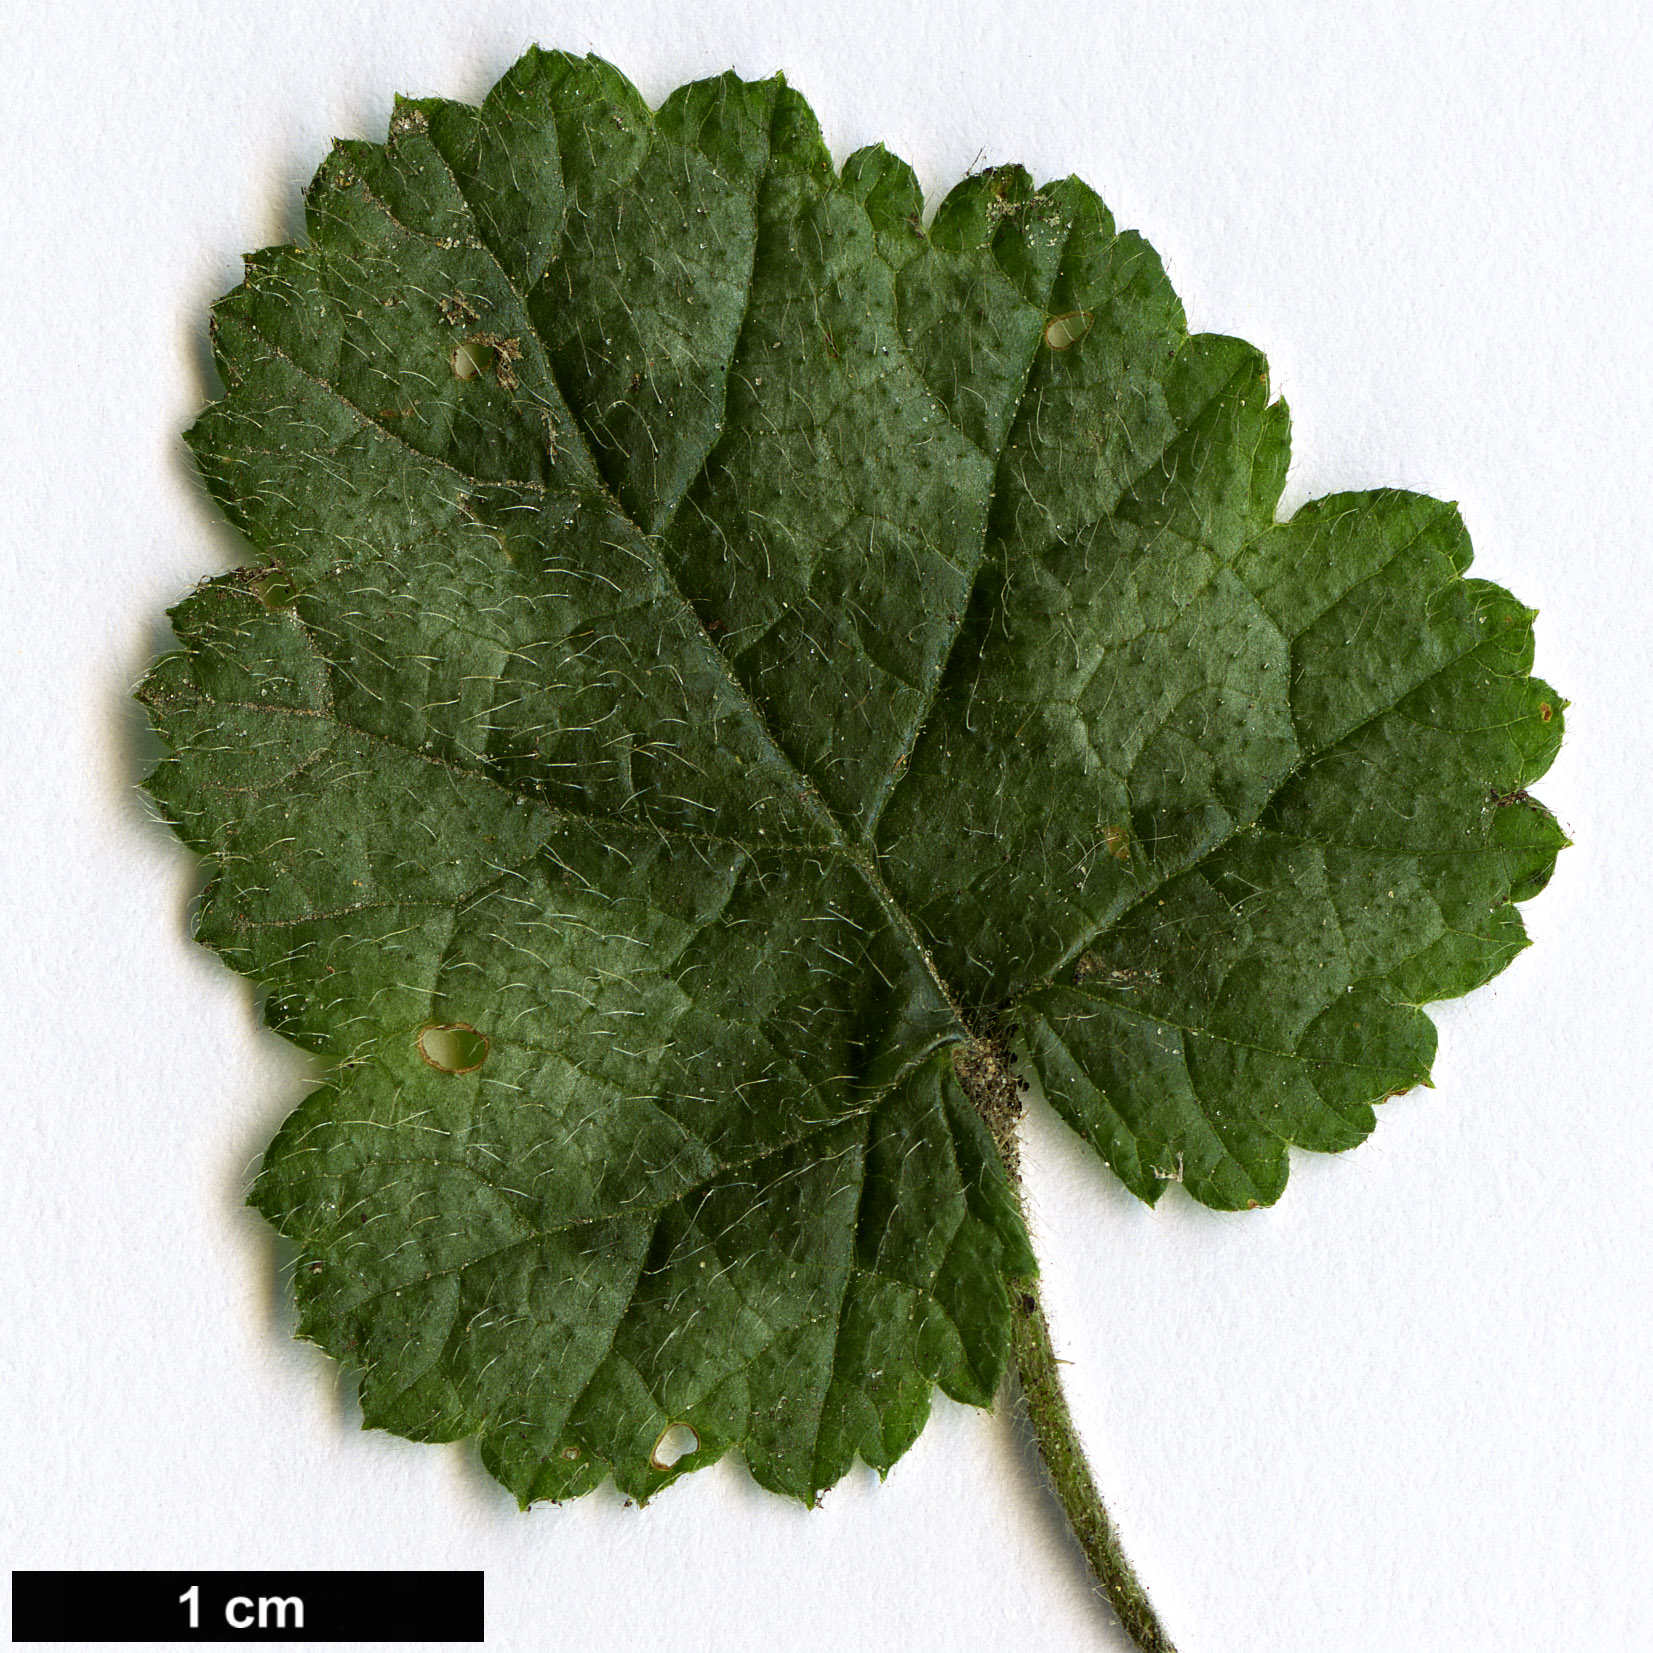 High resolution image: Family: Rosaceae - Genus: Rubus - Taxon: pectinellus - SpeciesSub: var. trilobus